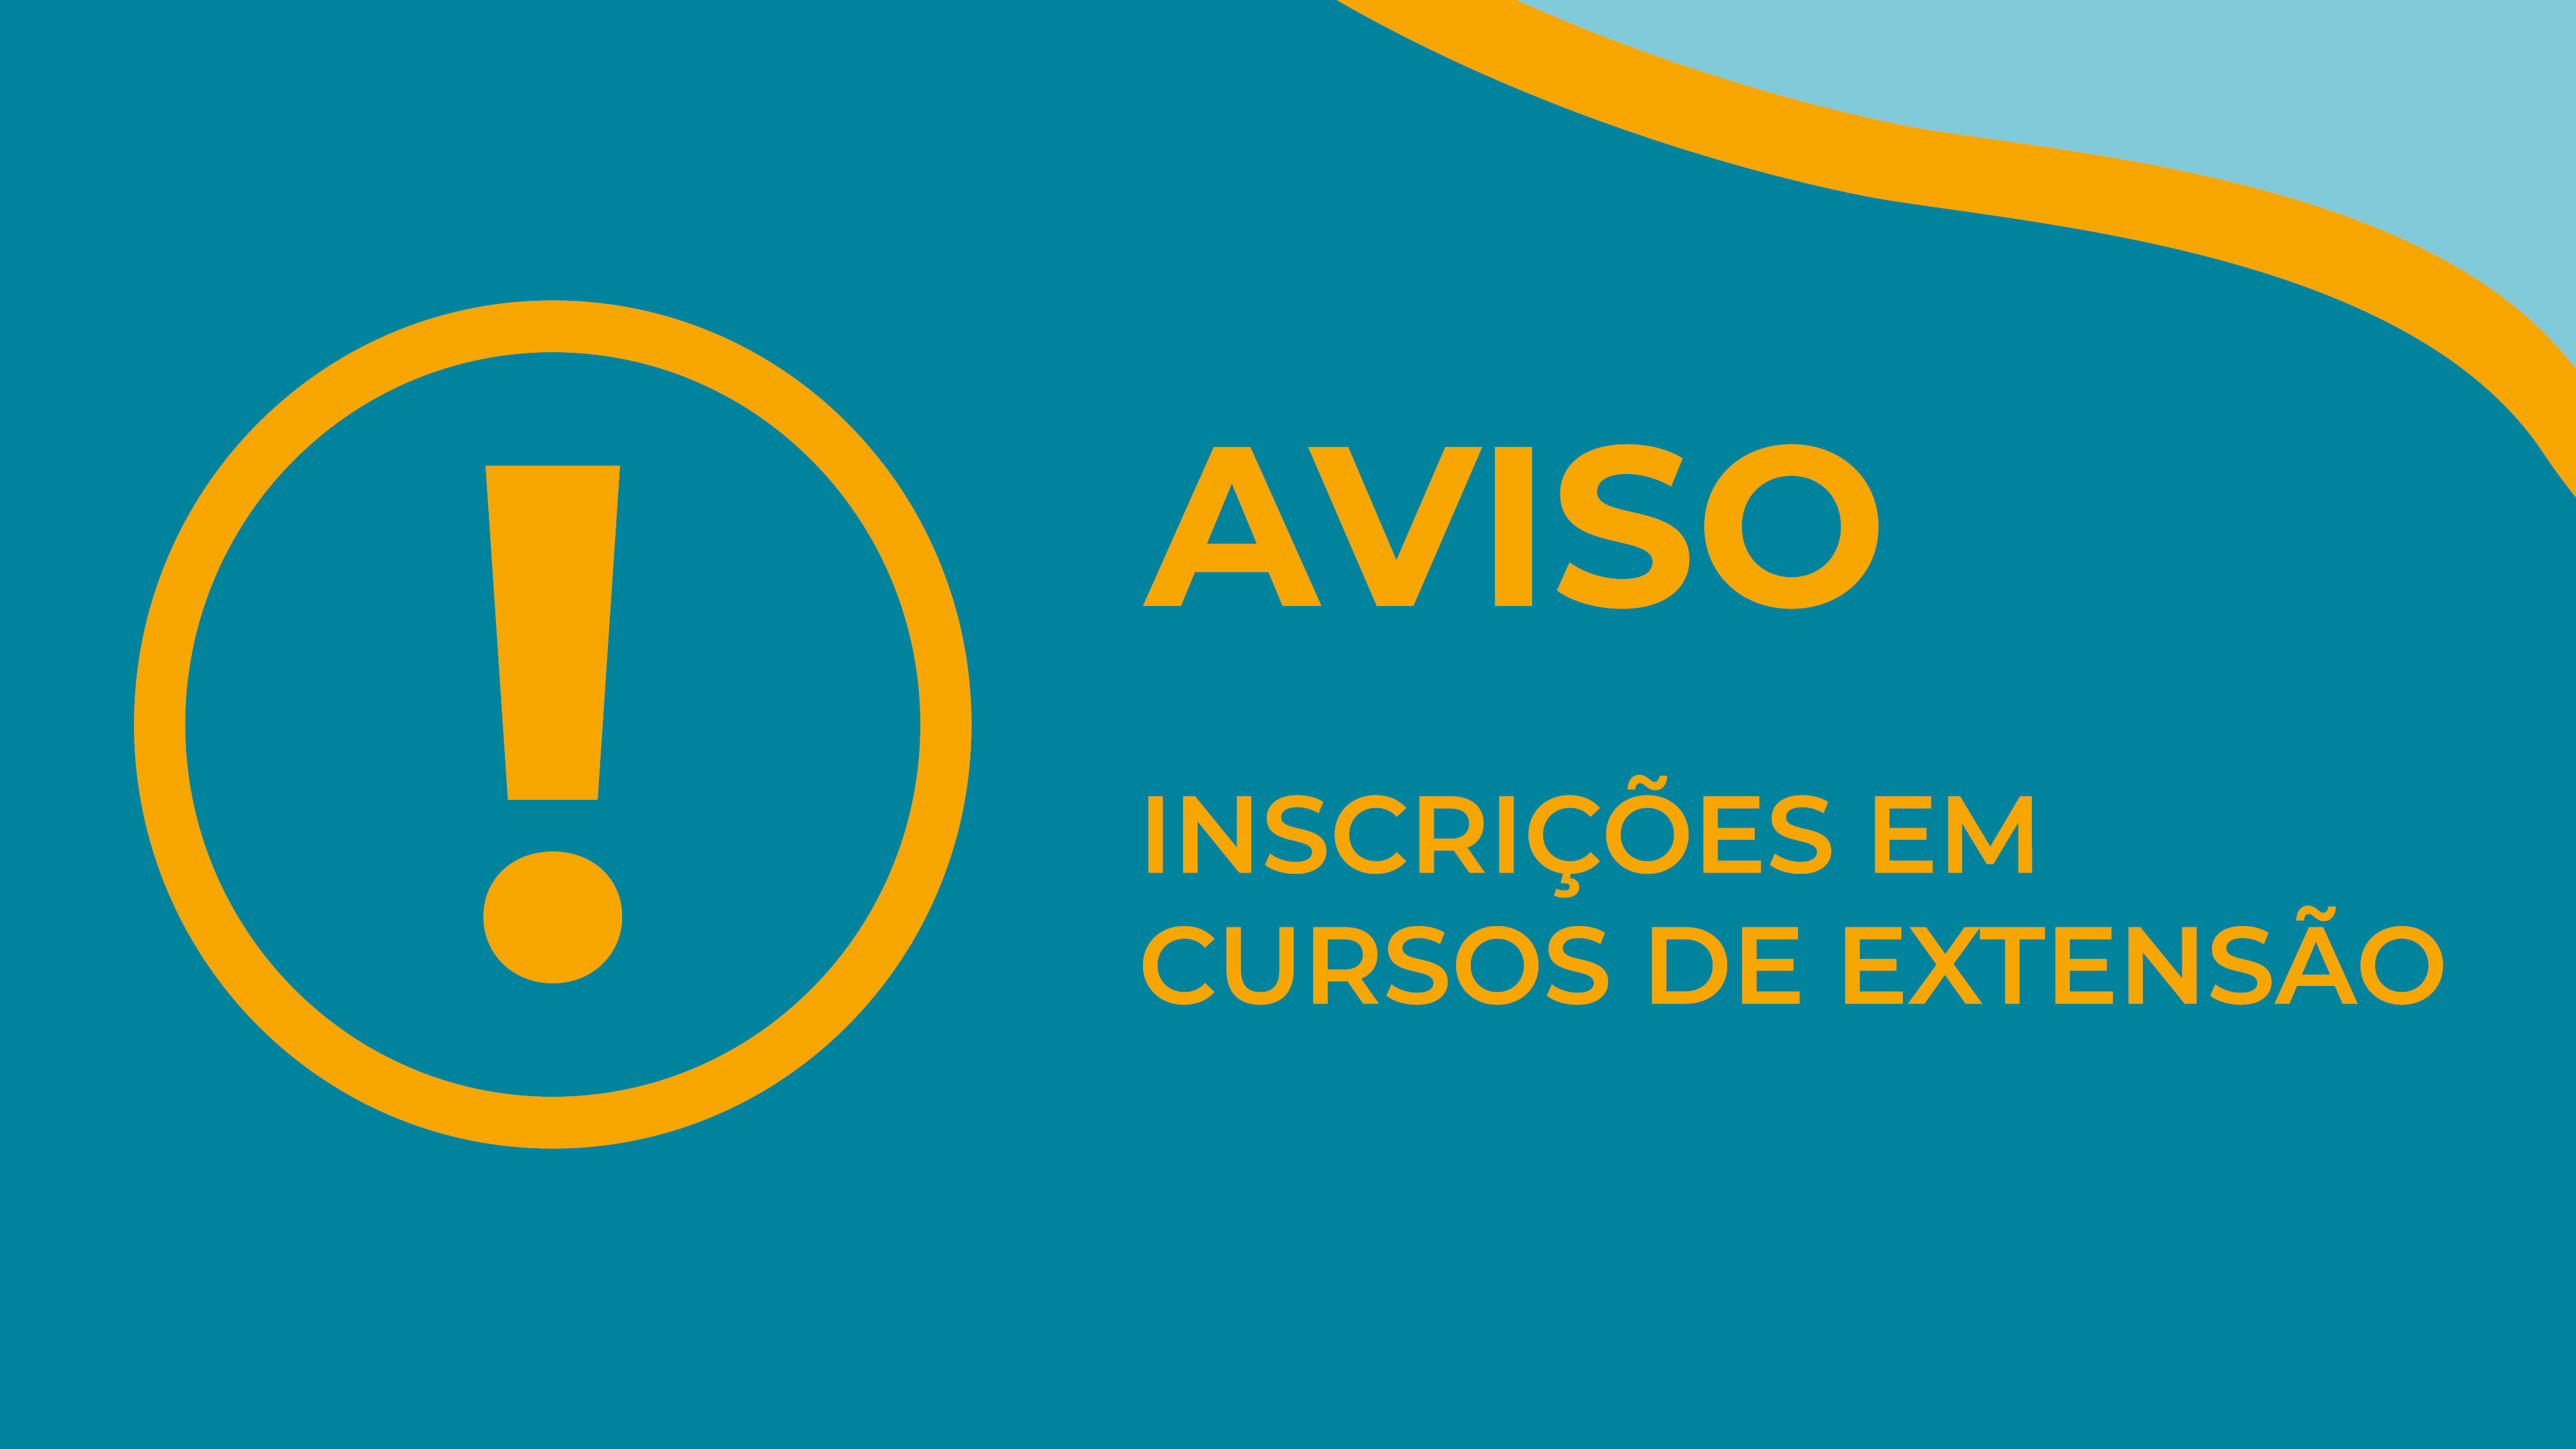 (Português) Manutenção no sistema de inscrições de cursos: confira datas